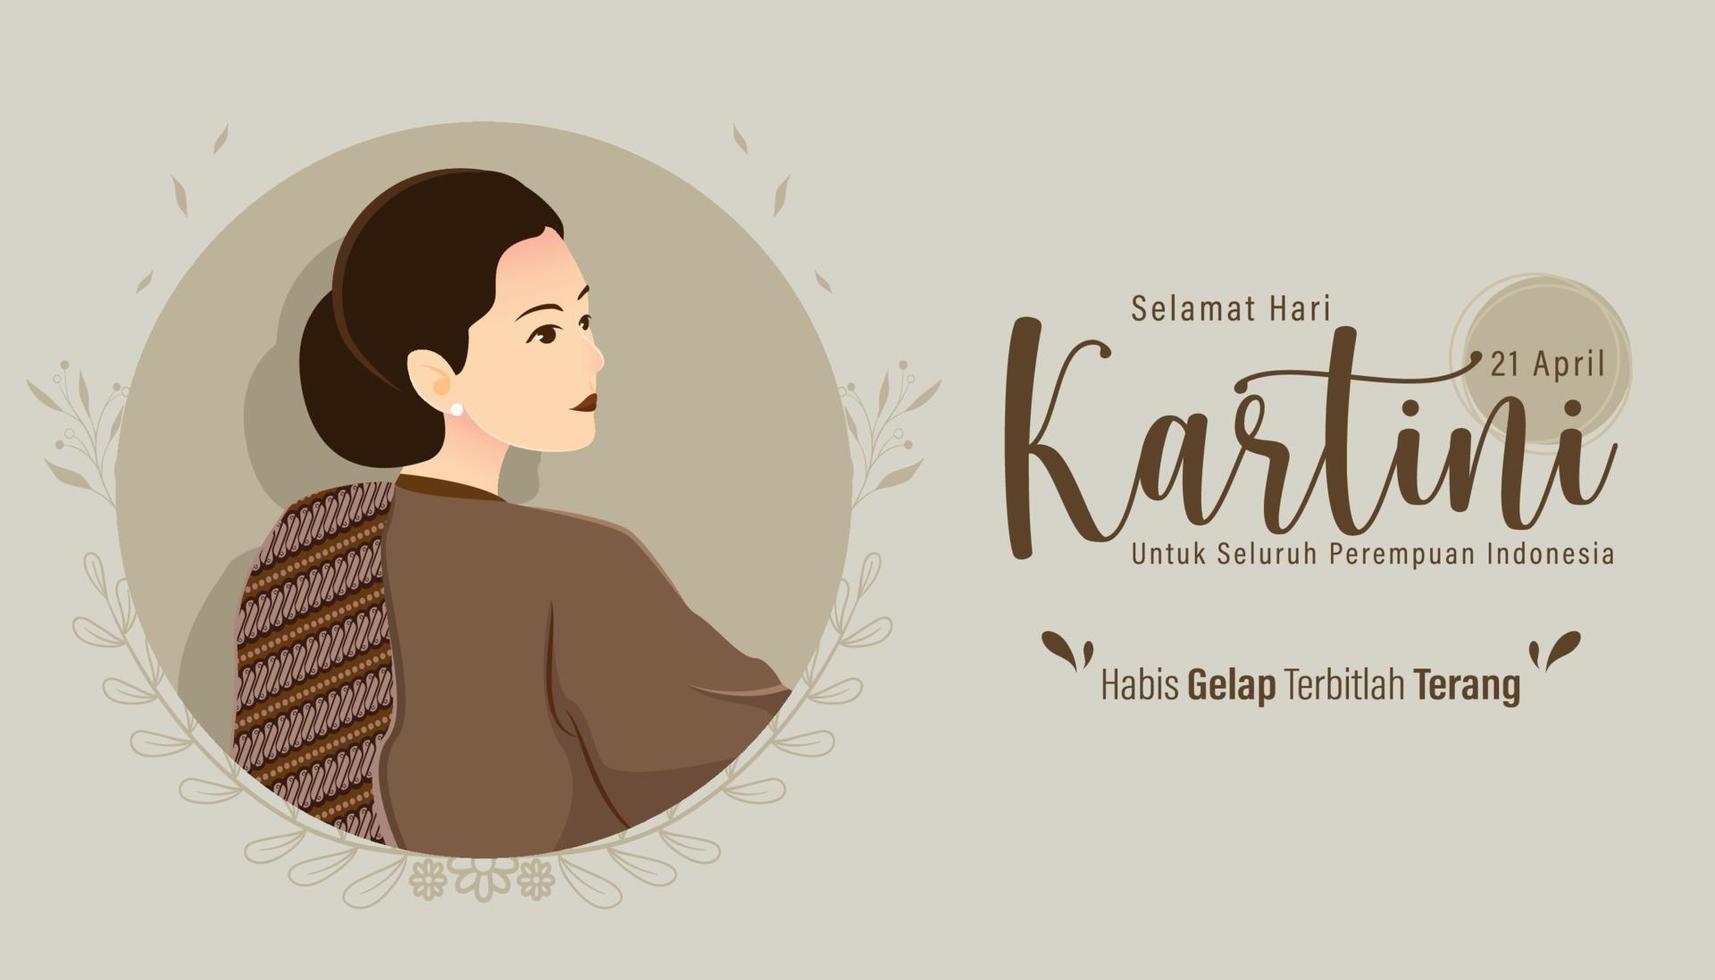 selamat hari kartini betyder glad kartini-dag. kartini är en indonesisk kvinnlig hjälte. habis gelap terbitlah terang betyder efter mörkret kommer ljus. vektor illustration.